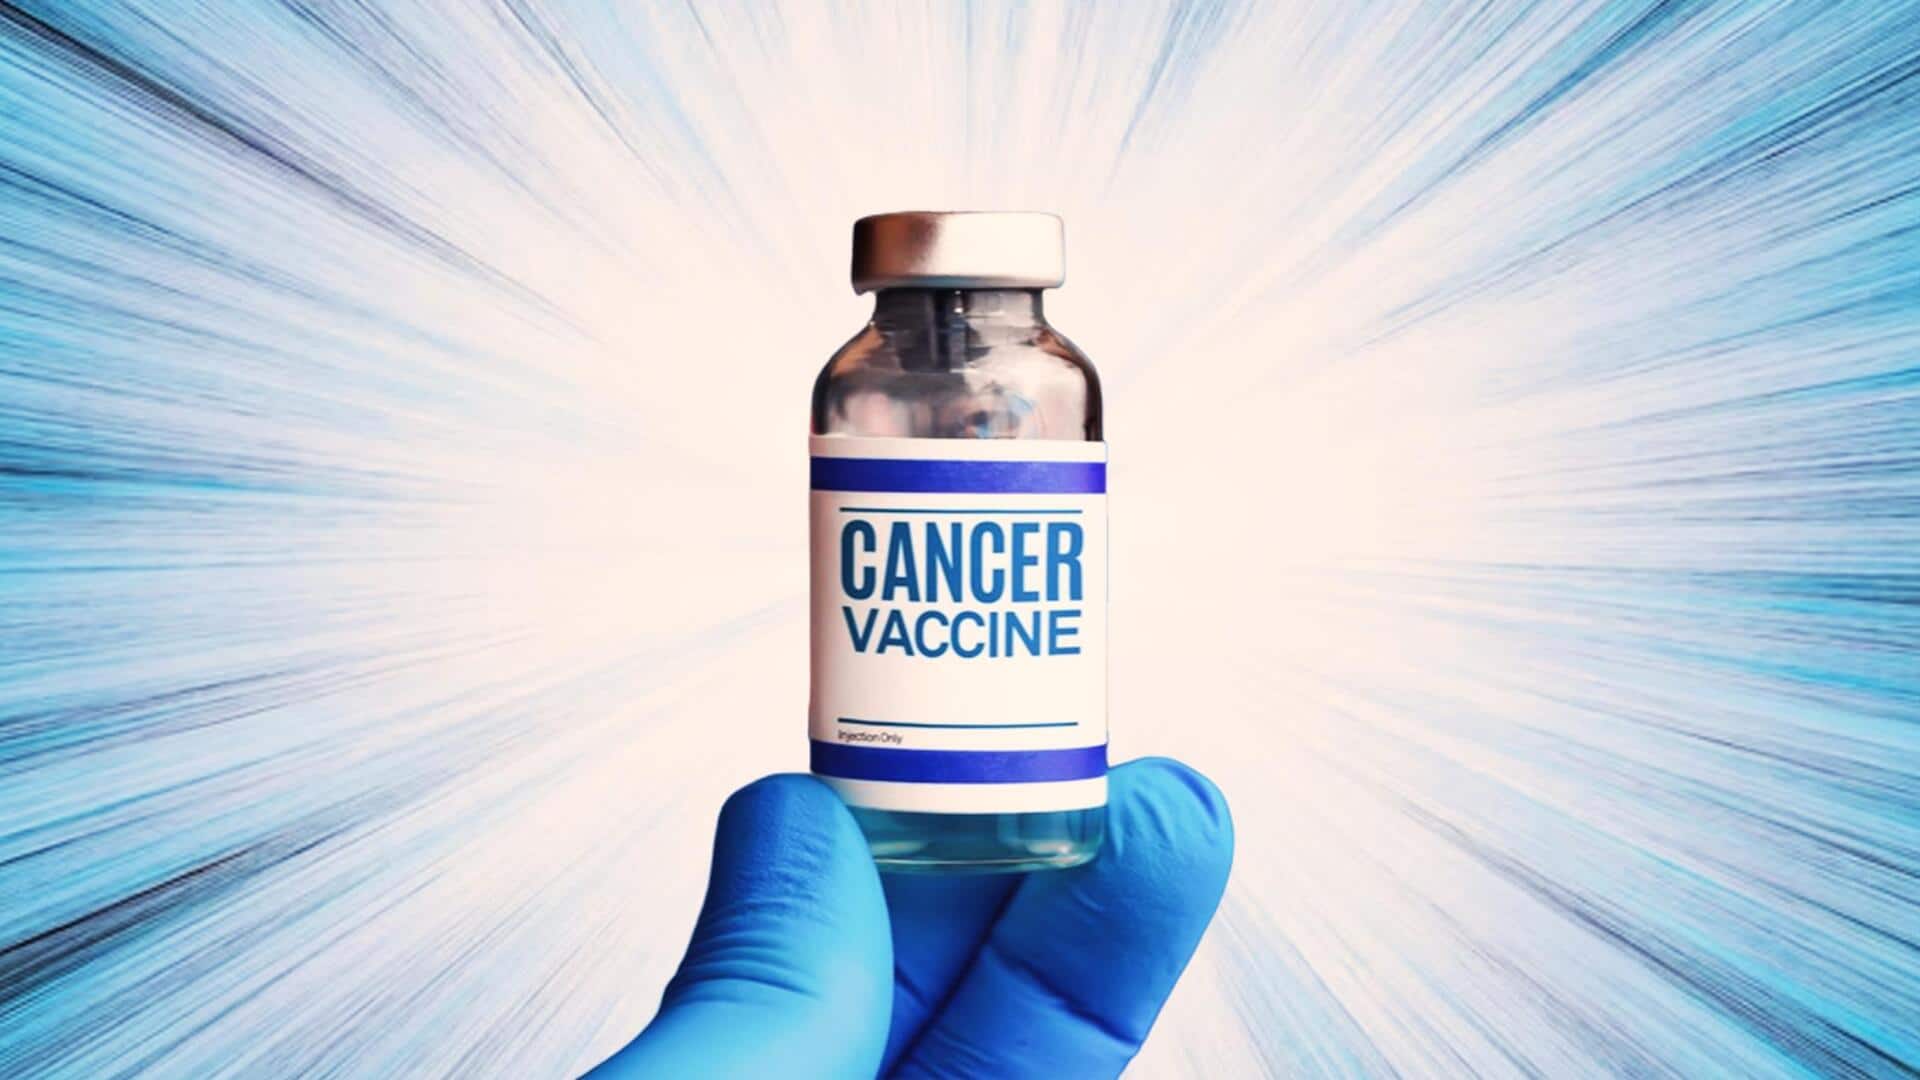 सर्वाइकल कैंसर के खिलाफ विशेष वैक्सीनेशन अभियान चलाएगी सरकार, 8 करोड़ लड़कियों को लगेगी वैक्सीन